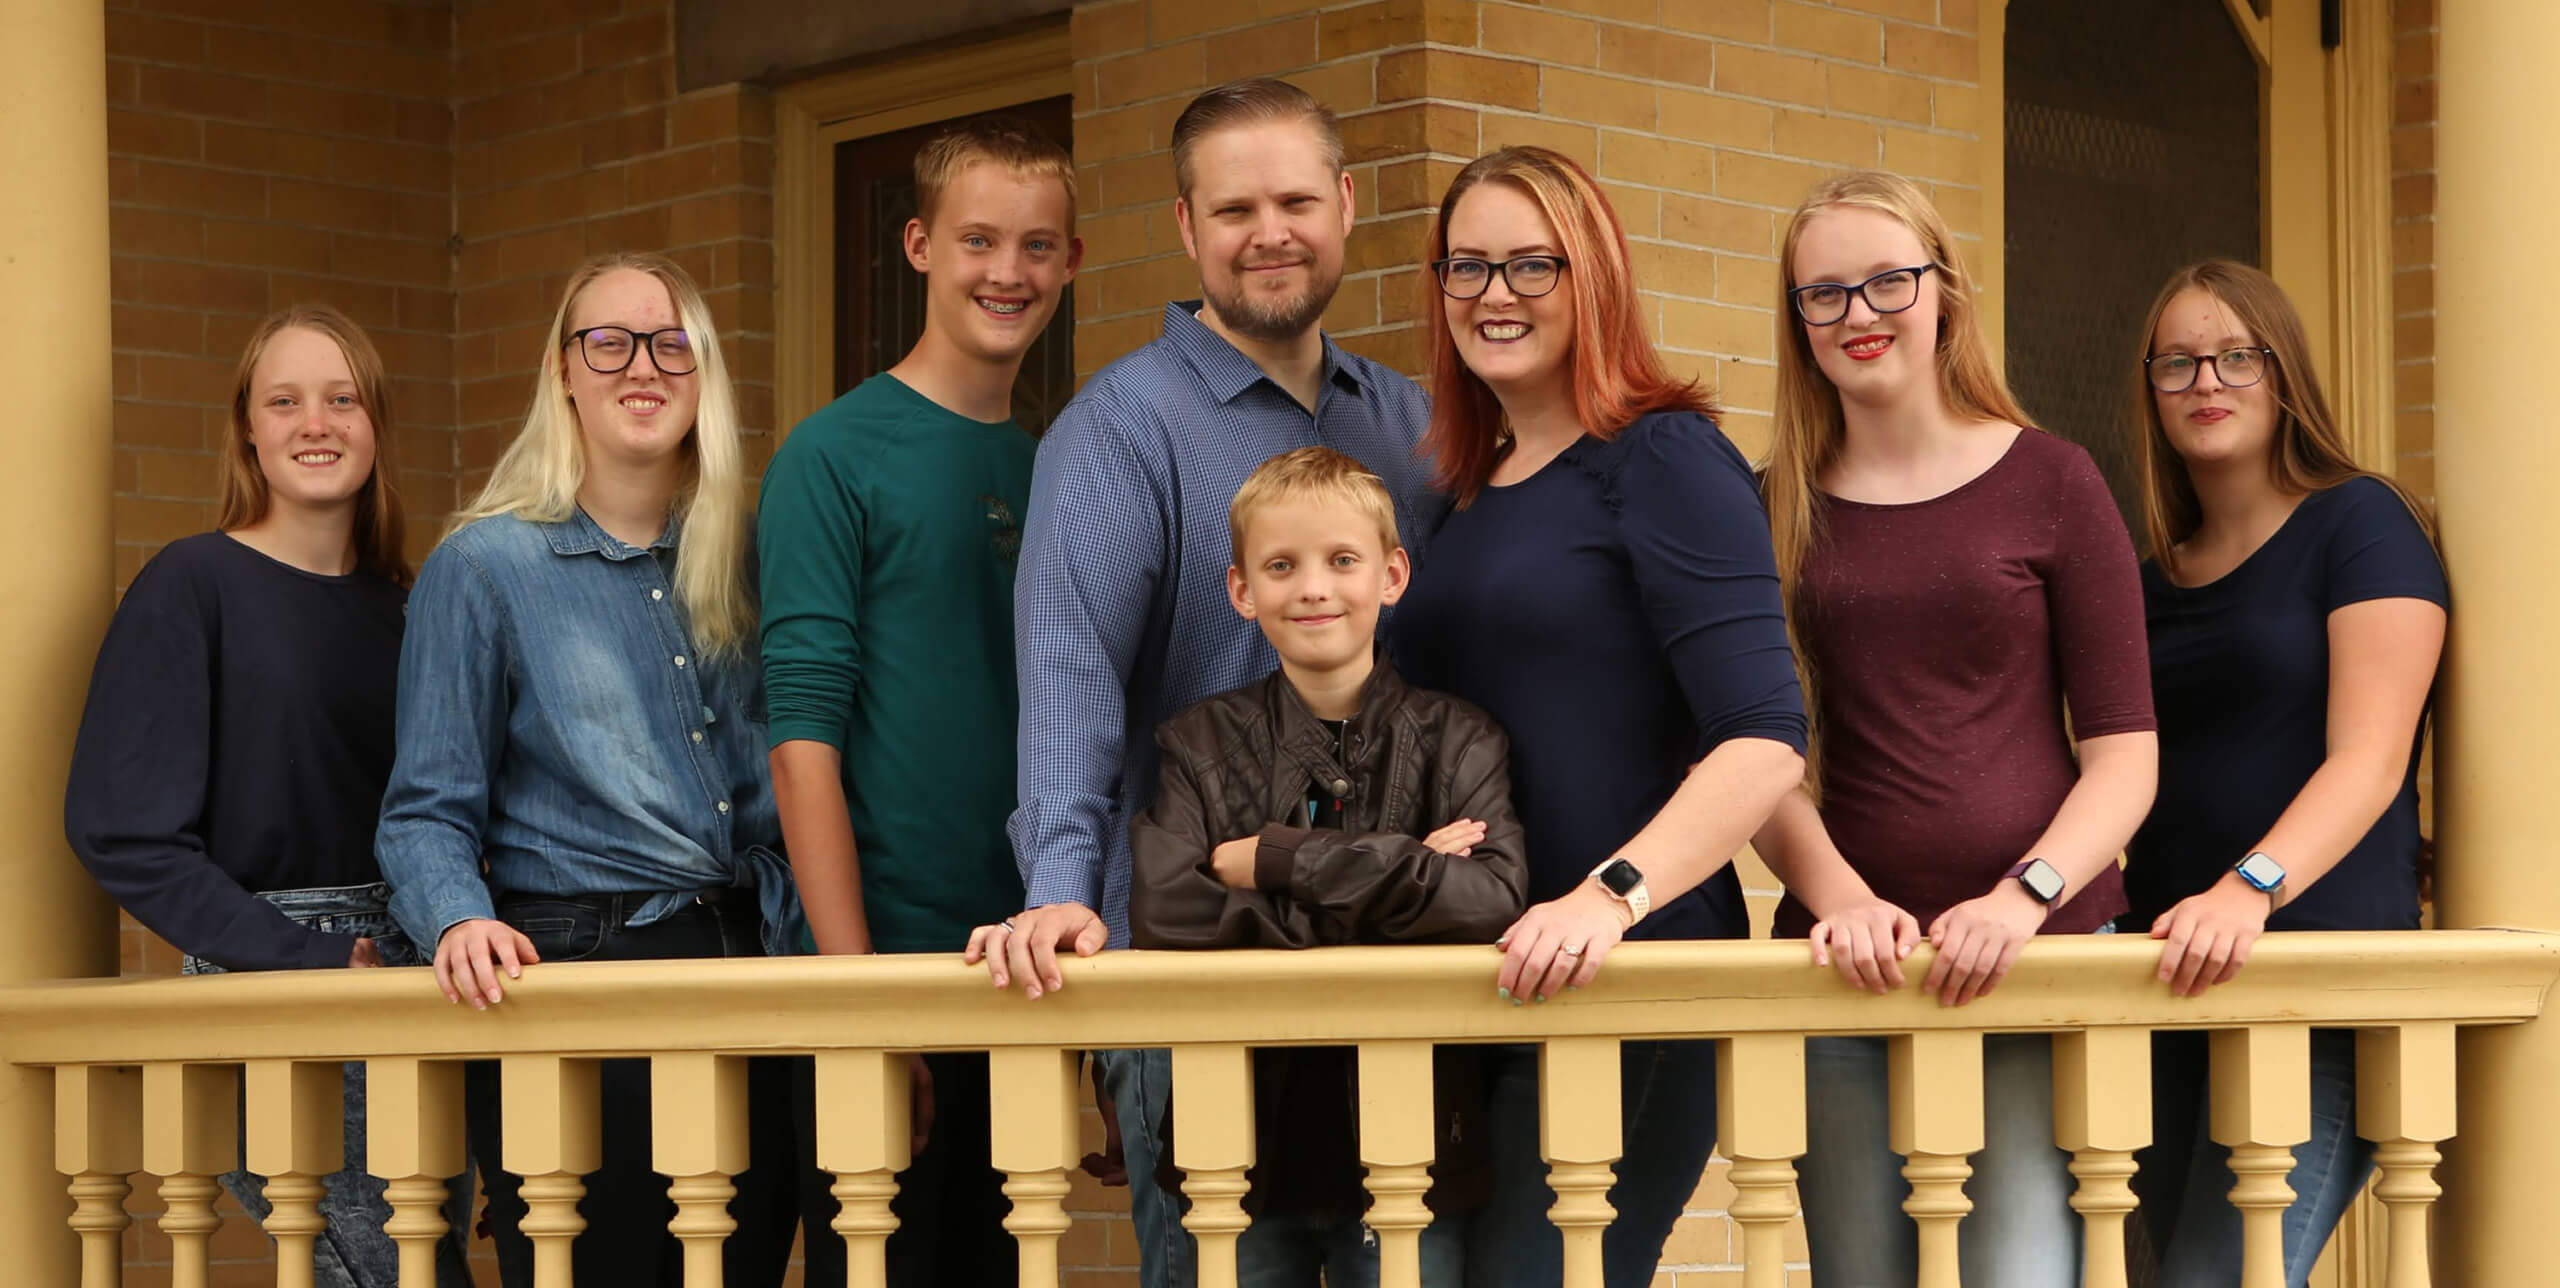 The Bair Family in September 2020